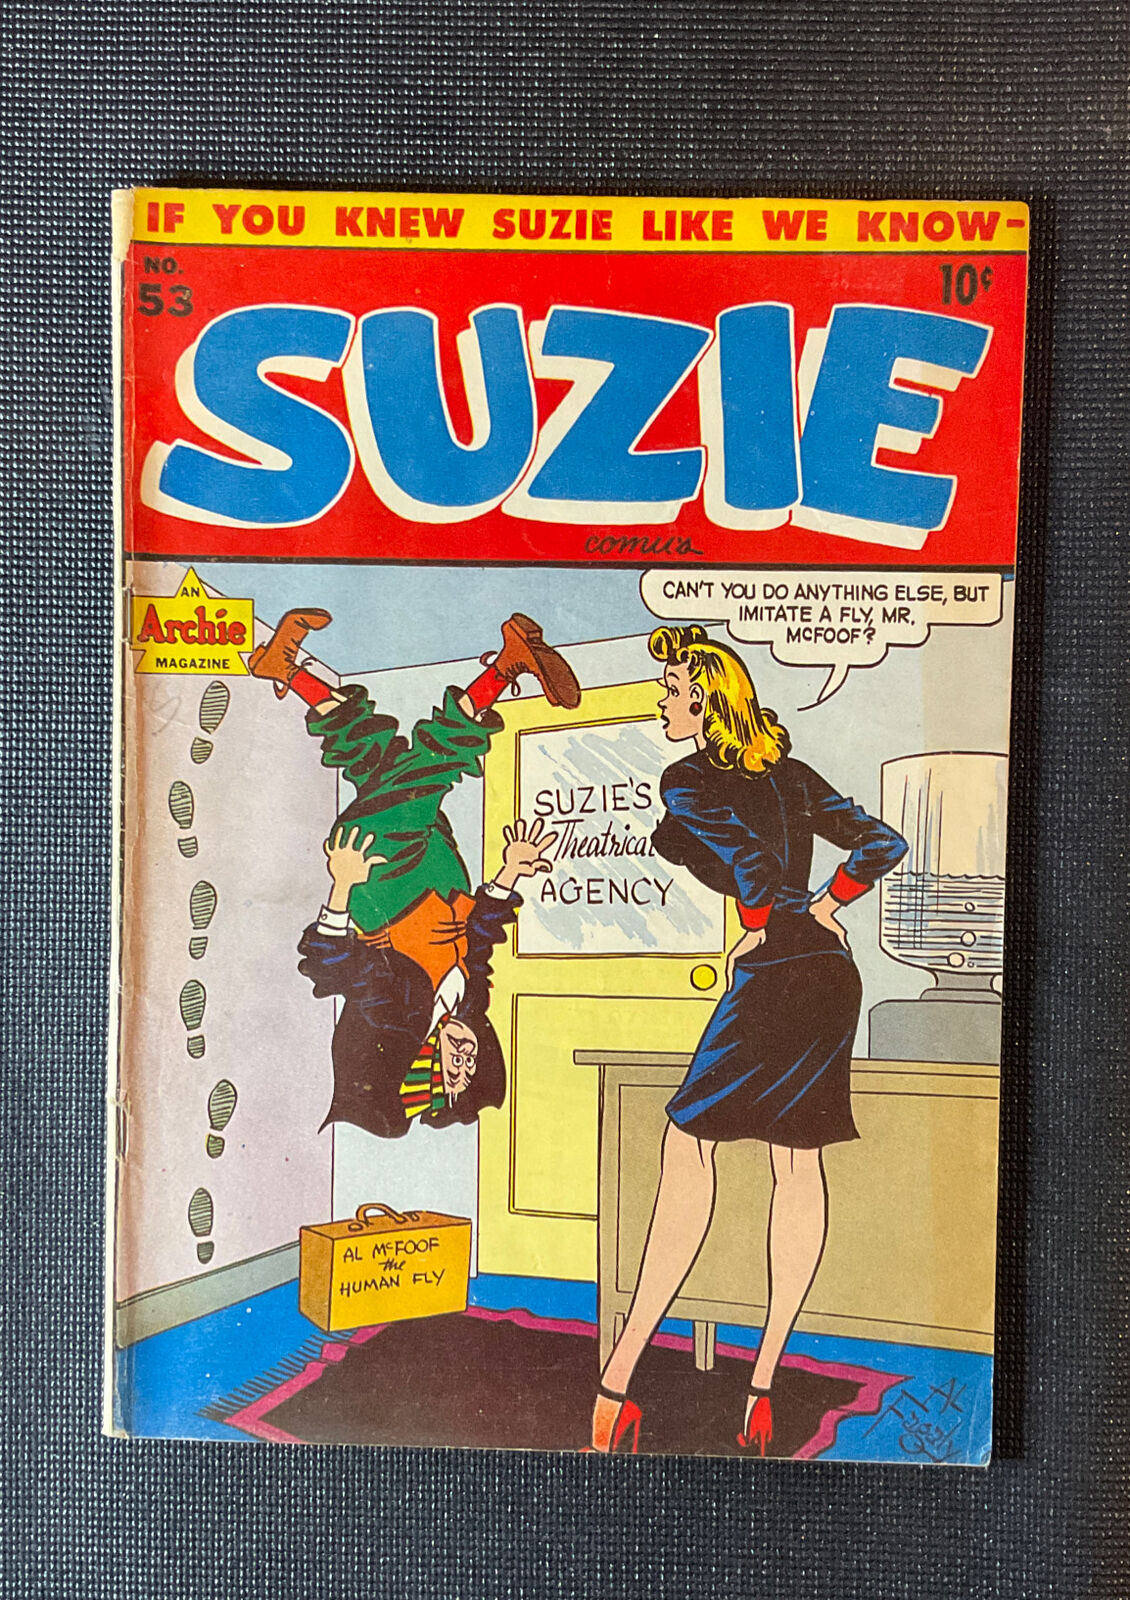 Suzie Comics #53 VG/FN 1945 Golden Age Good Girl Art Vintage Archie Comics RARE